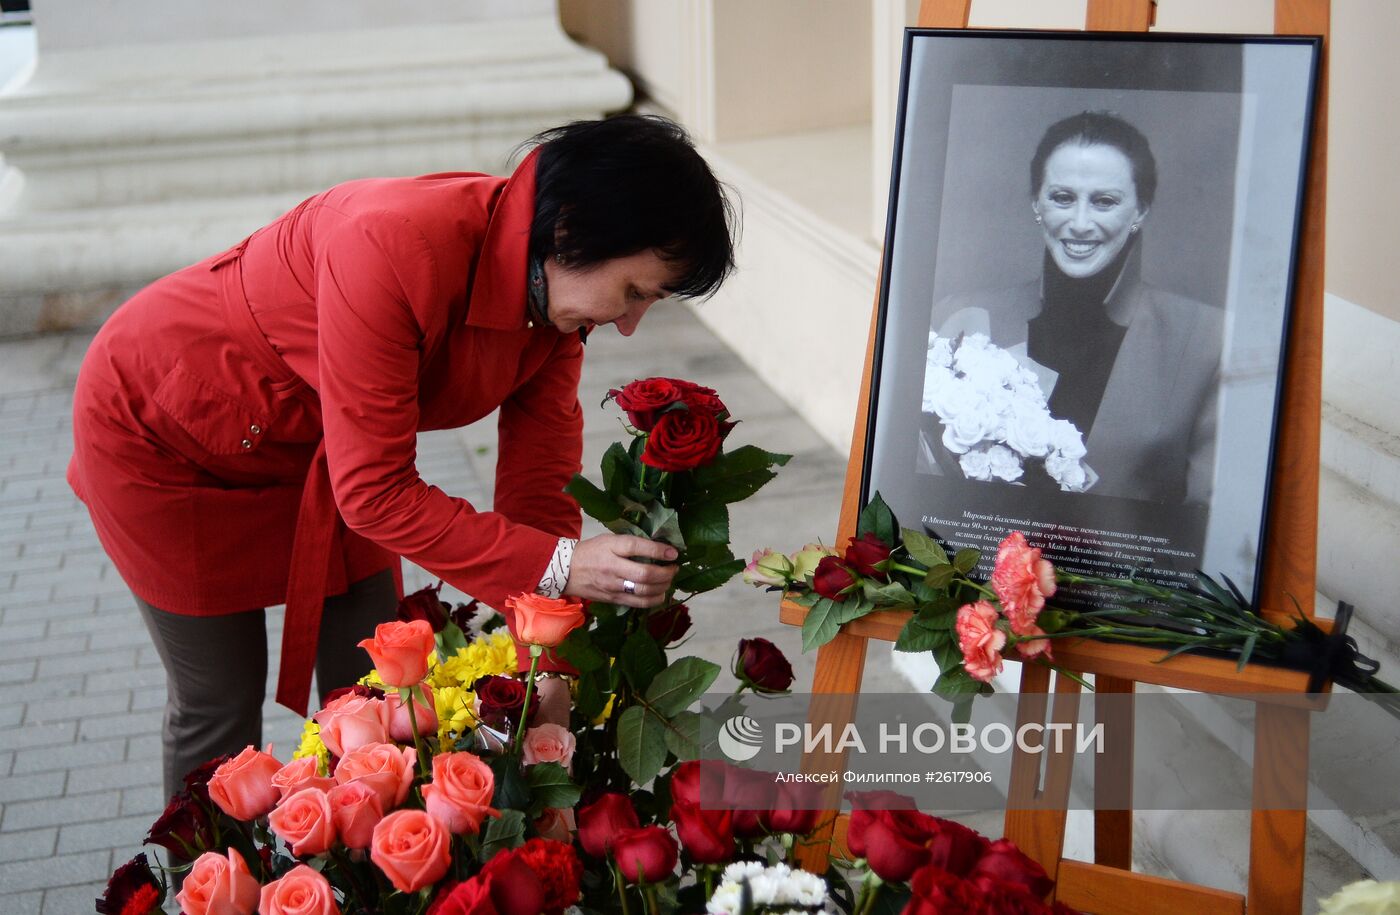 Цветы у Большого театра в память о Майе Плисецкой